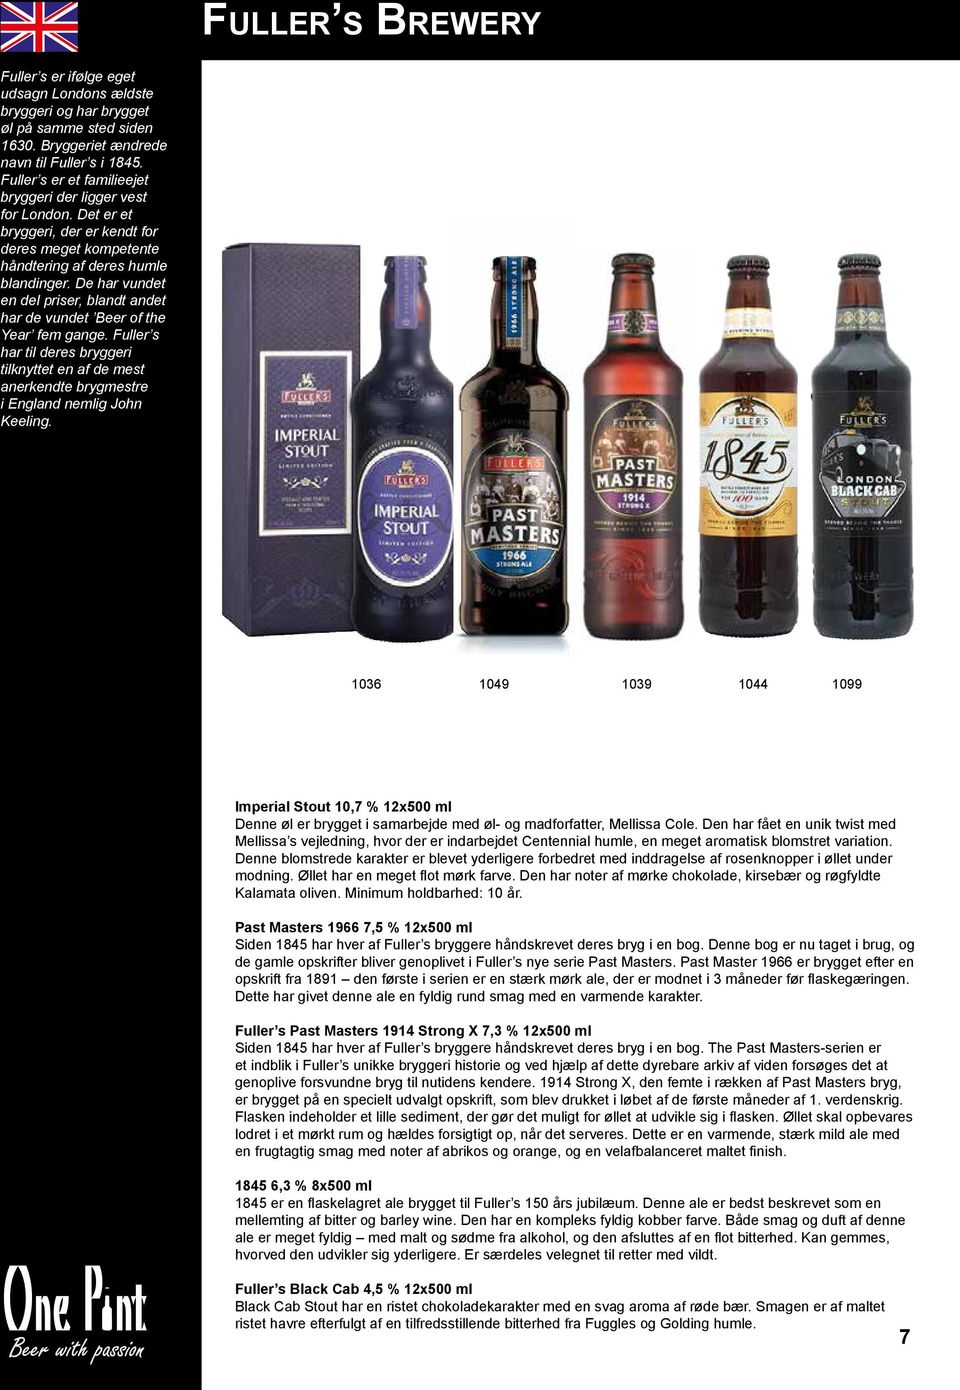 De har vundet en del priser, blandt andet har de vundet Beer of the Year fem gange. Fuller s har til deres bryggeri tilknyttet en af de mest anerkendte brygmestre i England nemlig John Keeling.